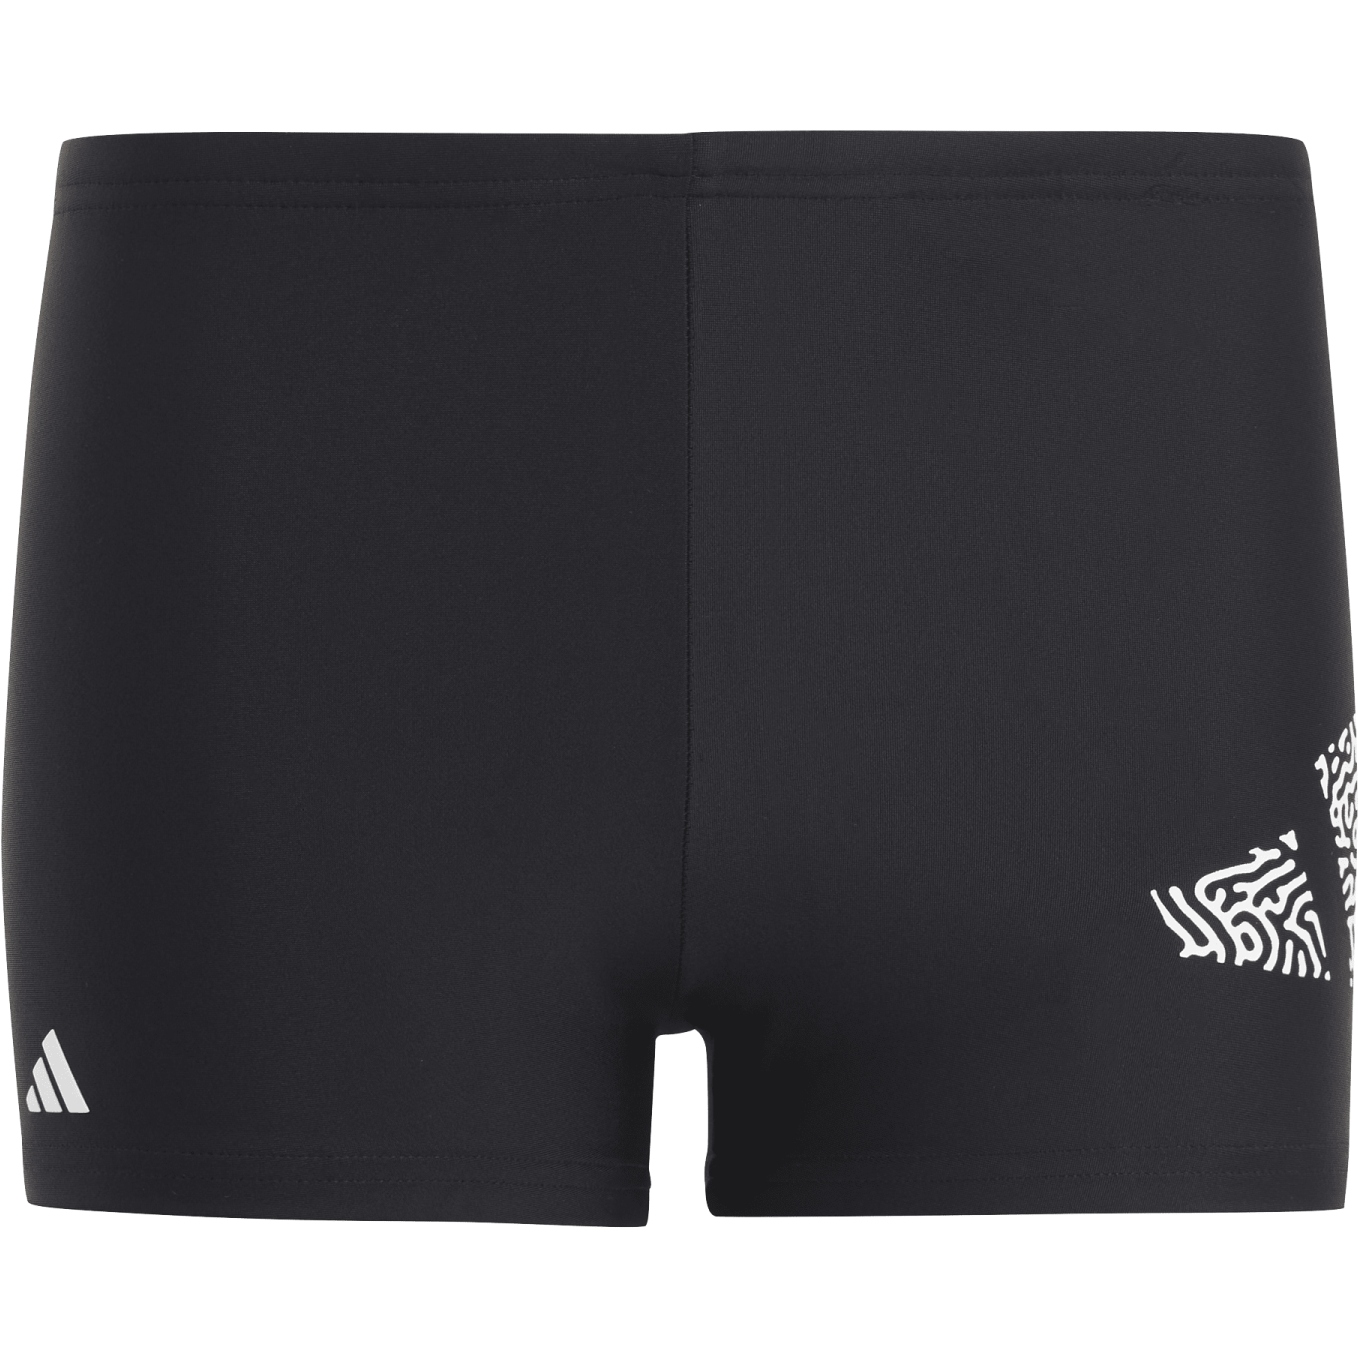 Produktbild von adidas 3 Bar Logo Boxer-Badehose Kinder - schwarz/weiß HR7480